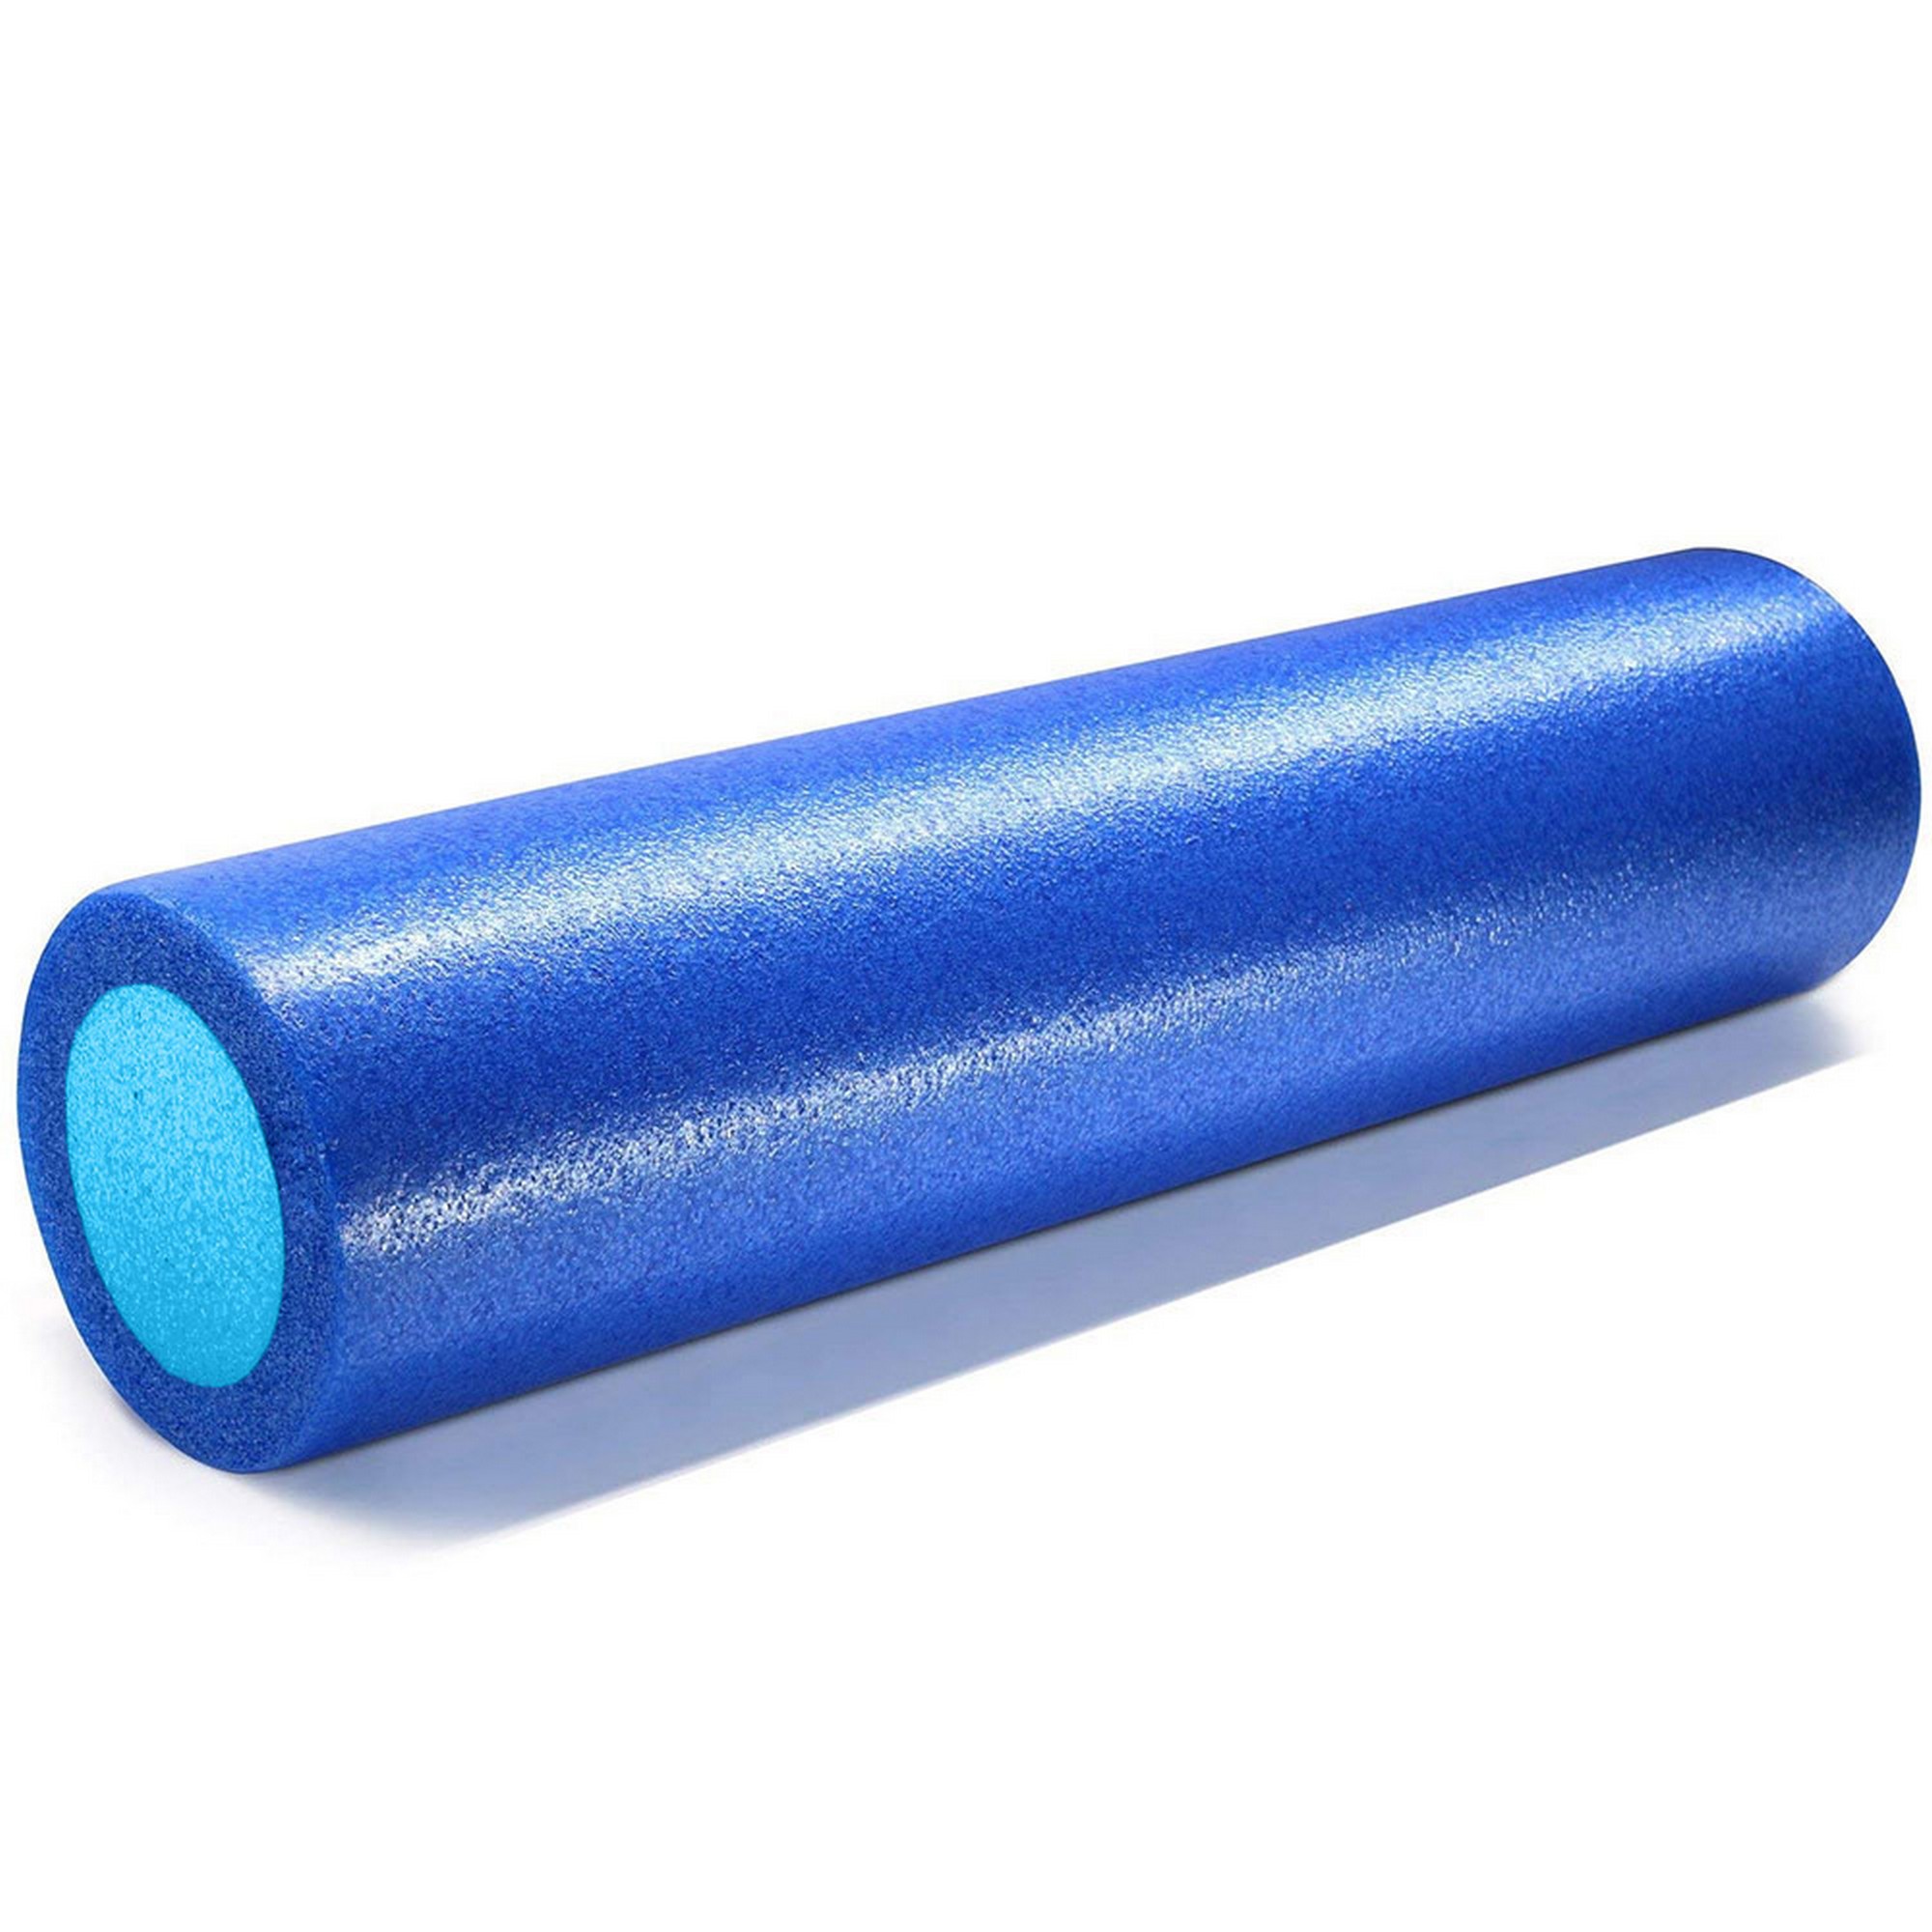 Ролик для йоги полнотелый 2-х цветный, 45х15x15см Sportex PEF45-A синий\голубой 2000_2000